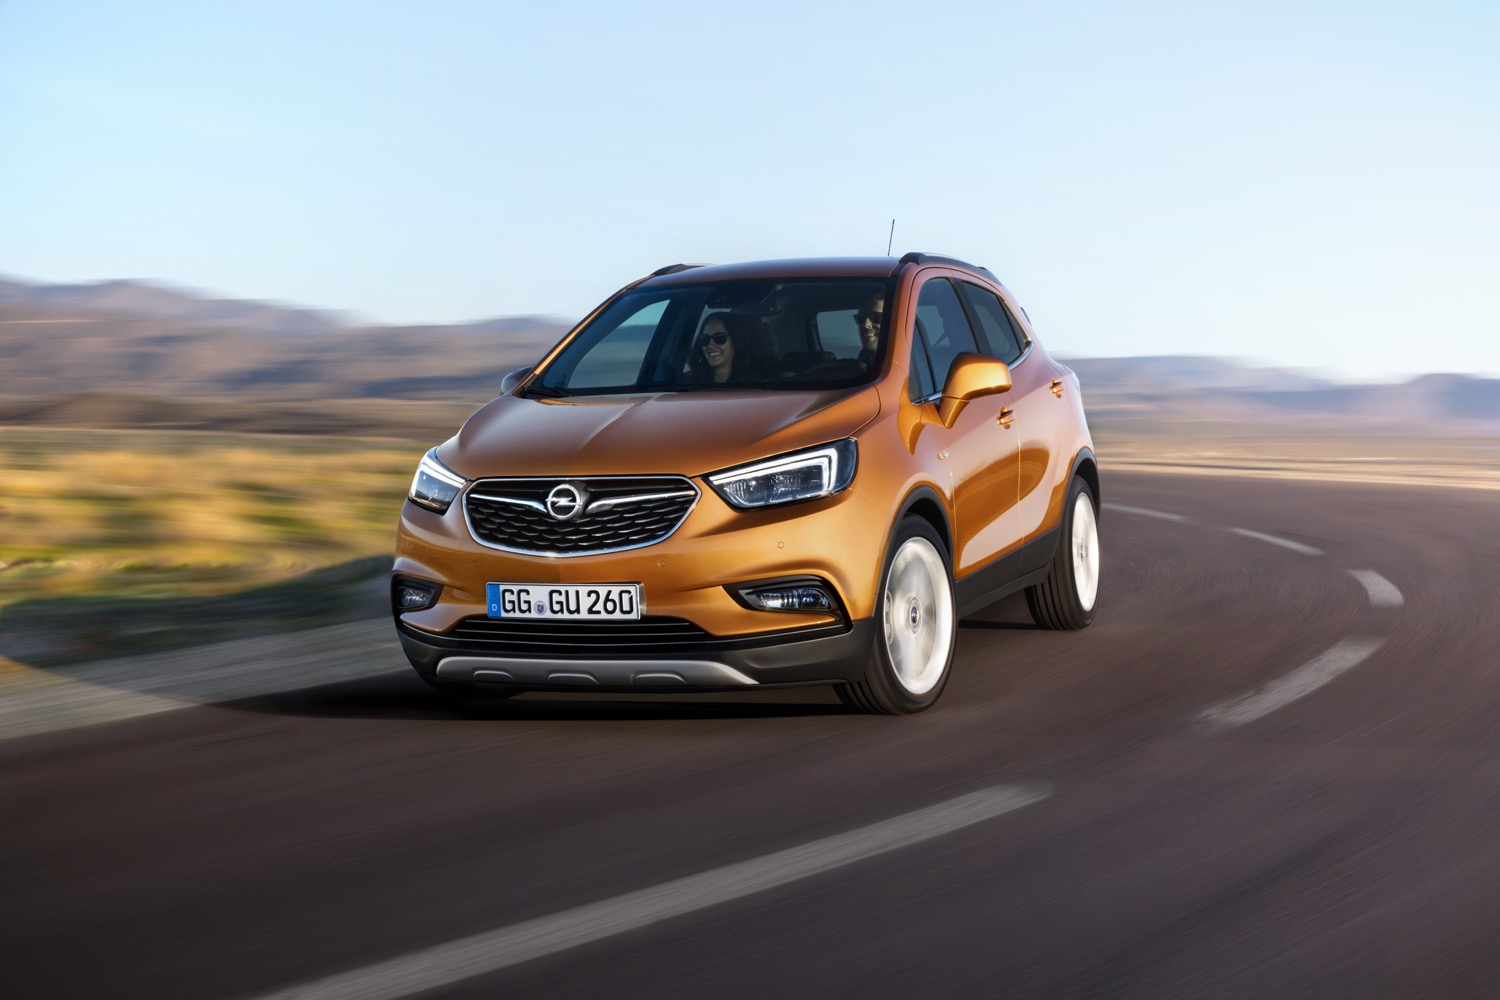 2016 Opel Mokka X Info, Pictures, Specs, Wiki